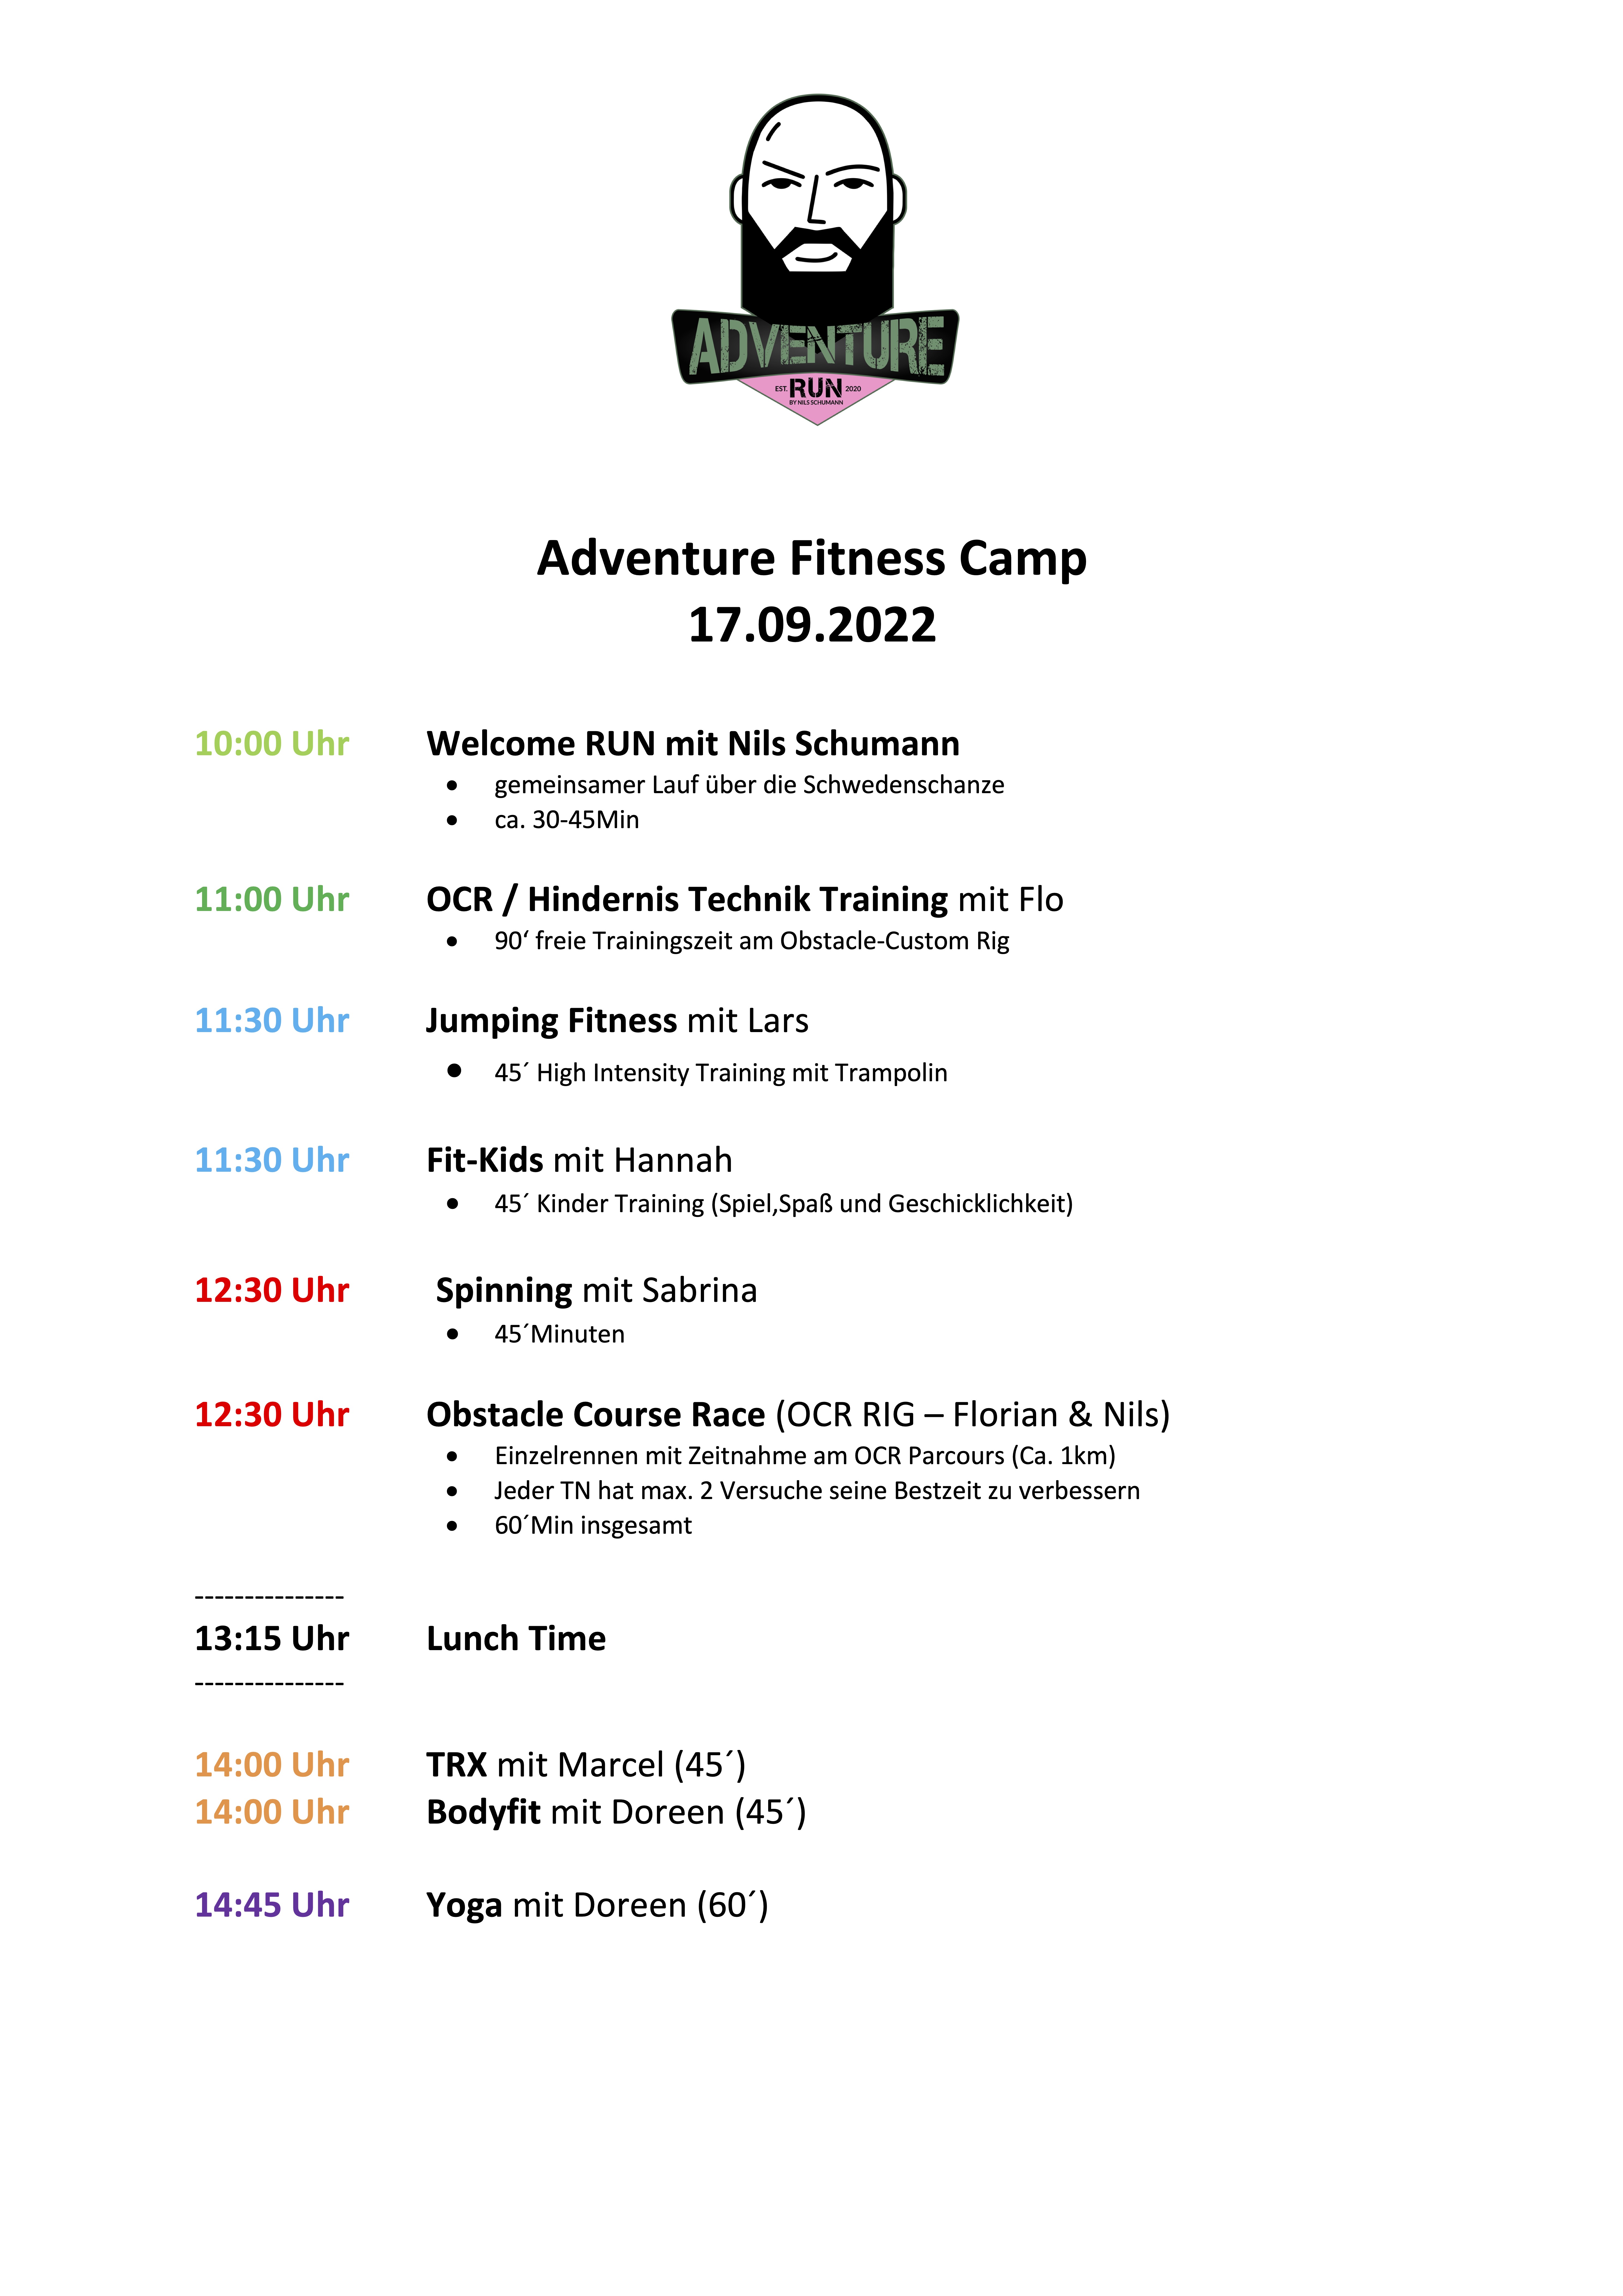 Adventure Camp Zeitplan als JPG